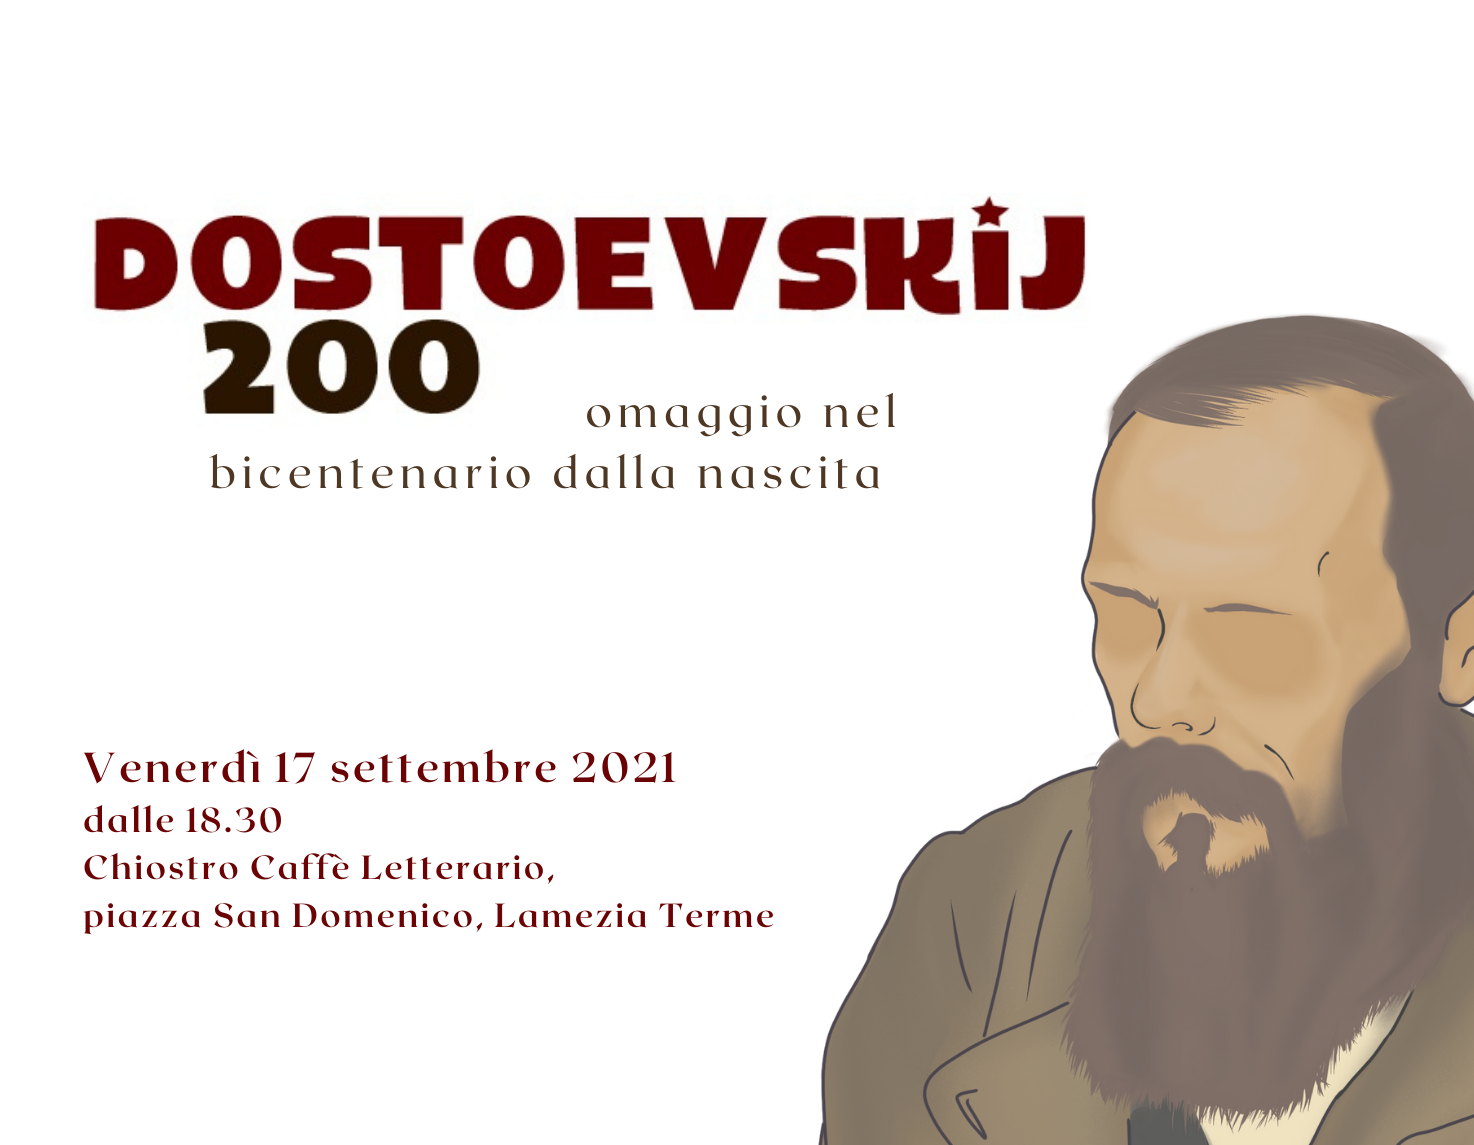 “Dostoevskij 200”: venerdì 17 la serata omaggio al grande scrittore russo